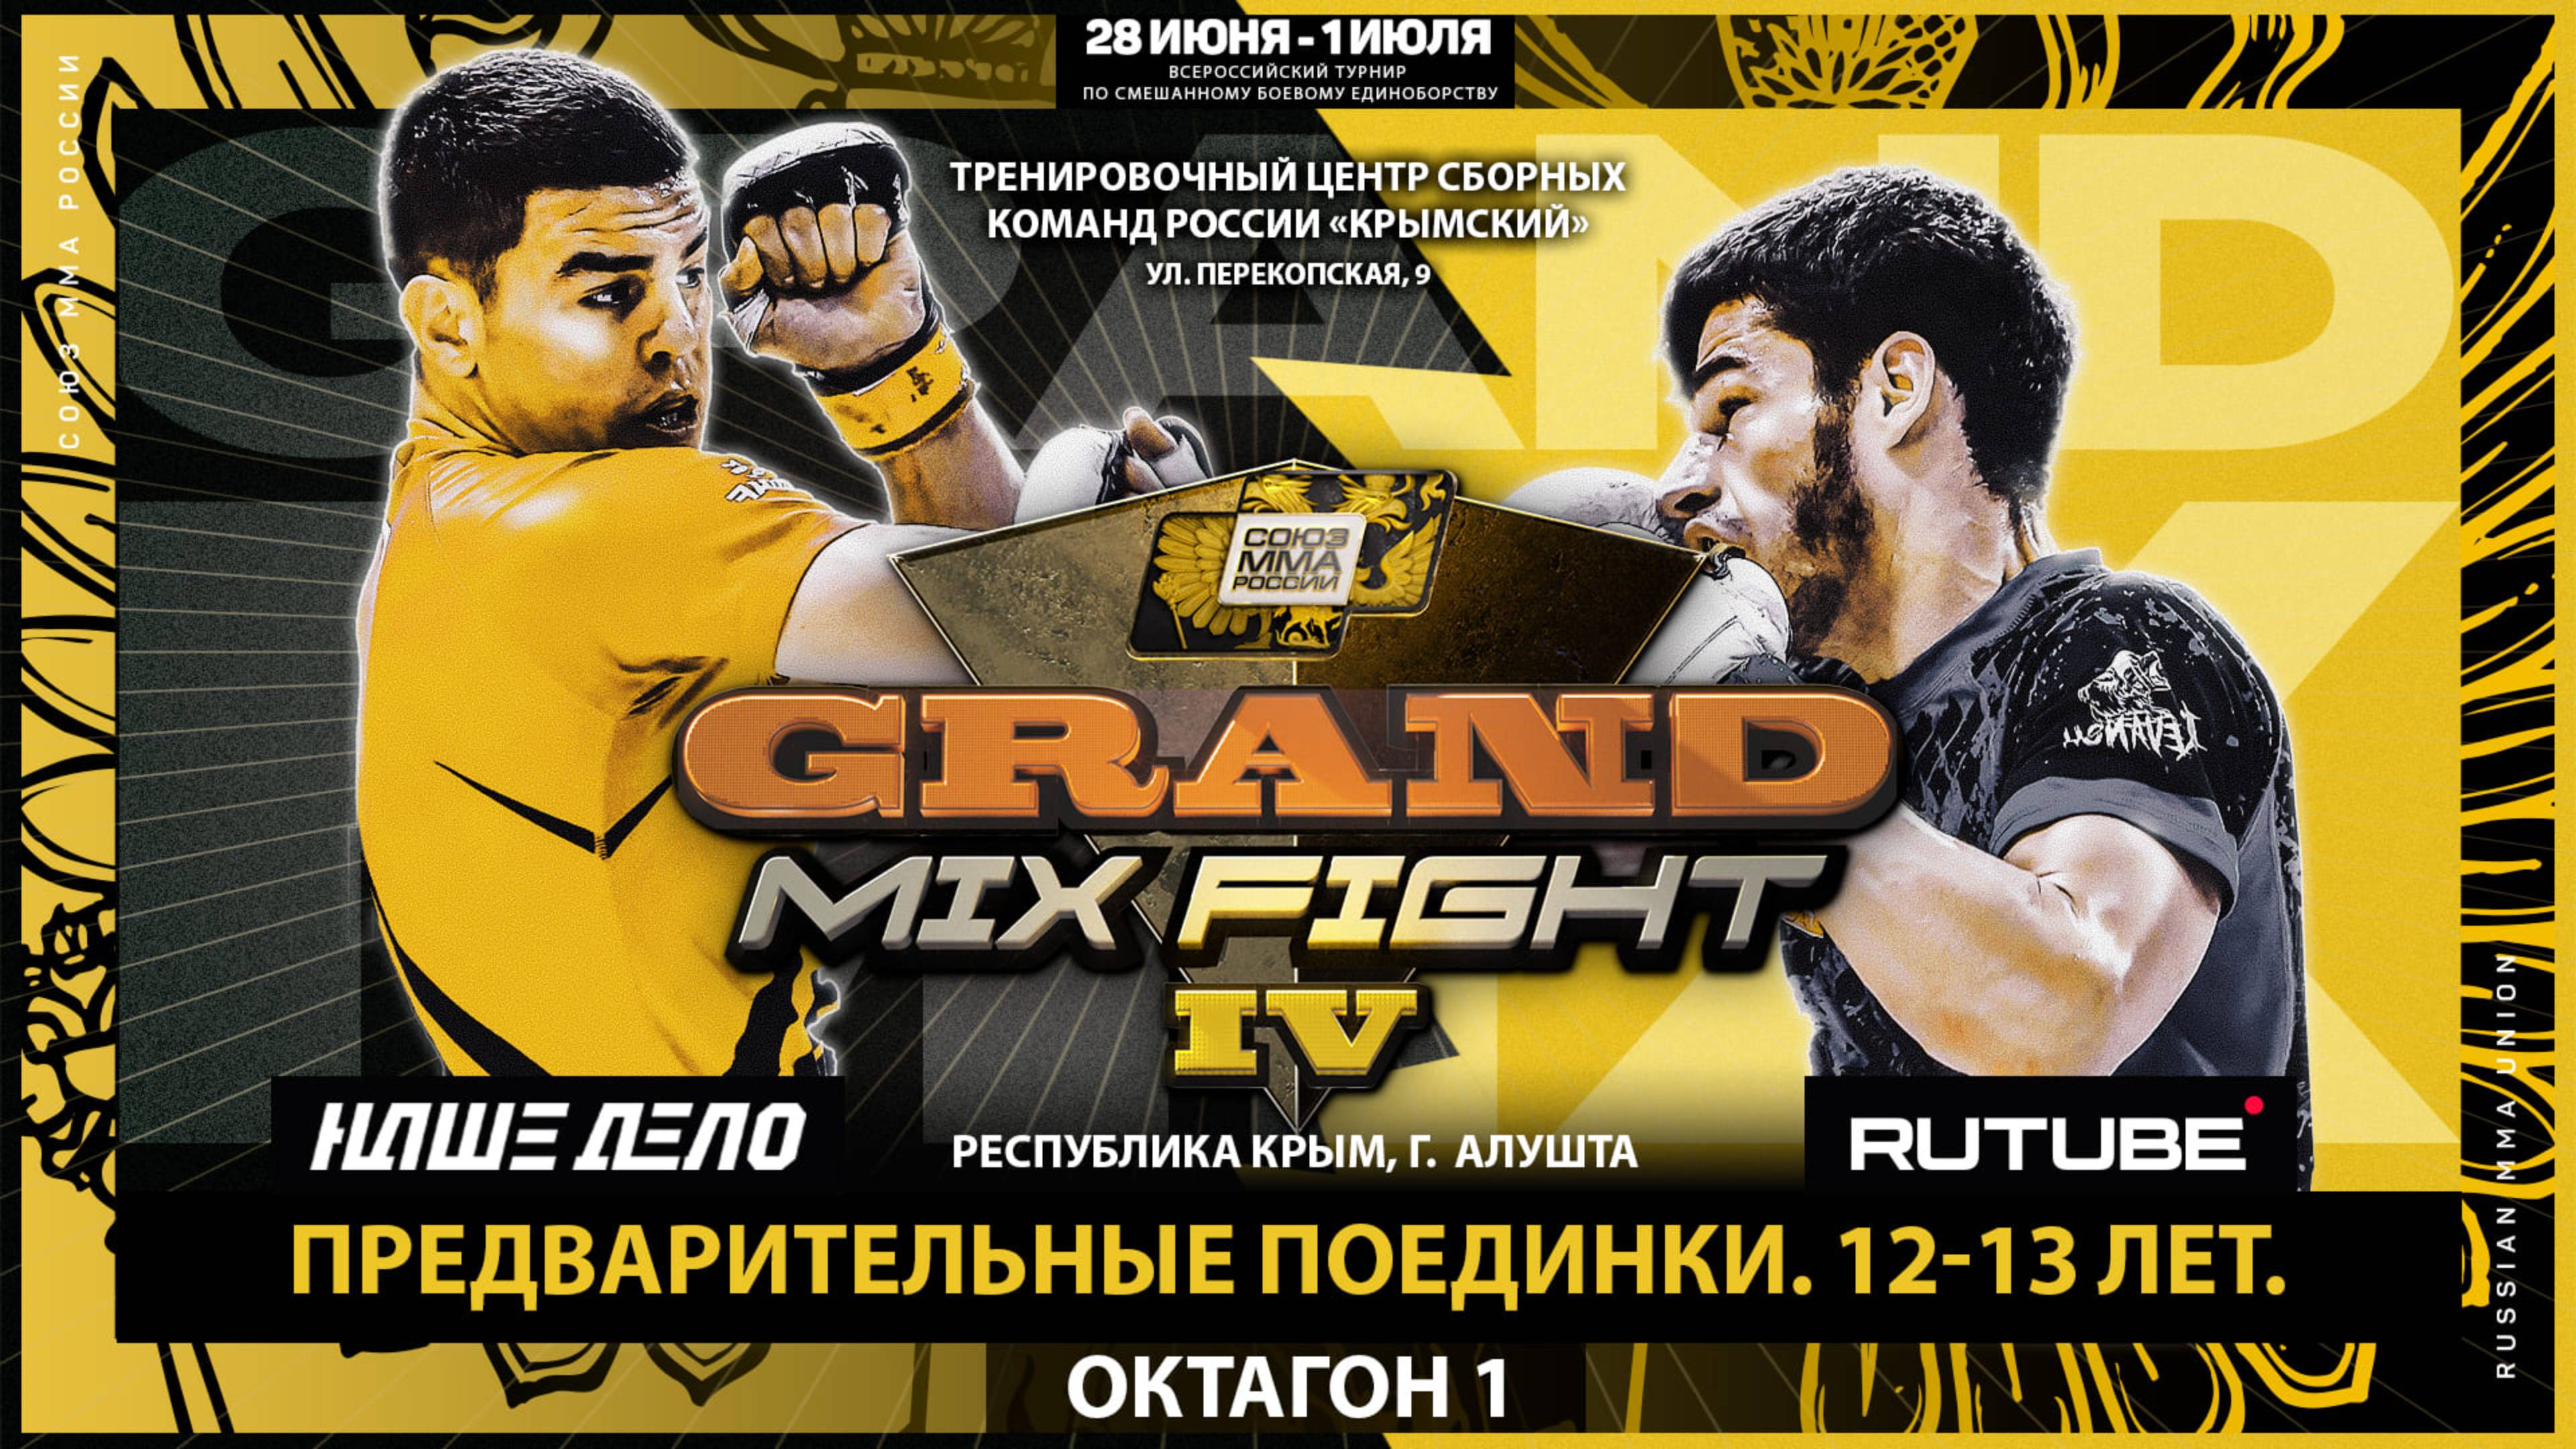 Всероссийский турнир Grand Mix Fight IV. Предварительные поединки 12-13 лет. Октагон 1